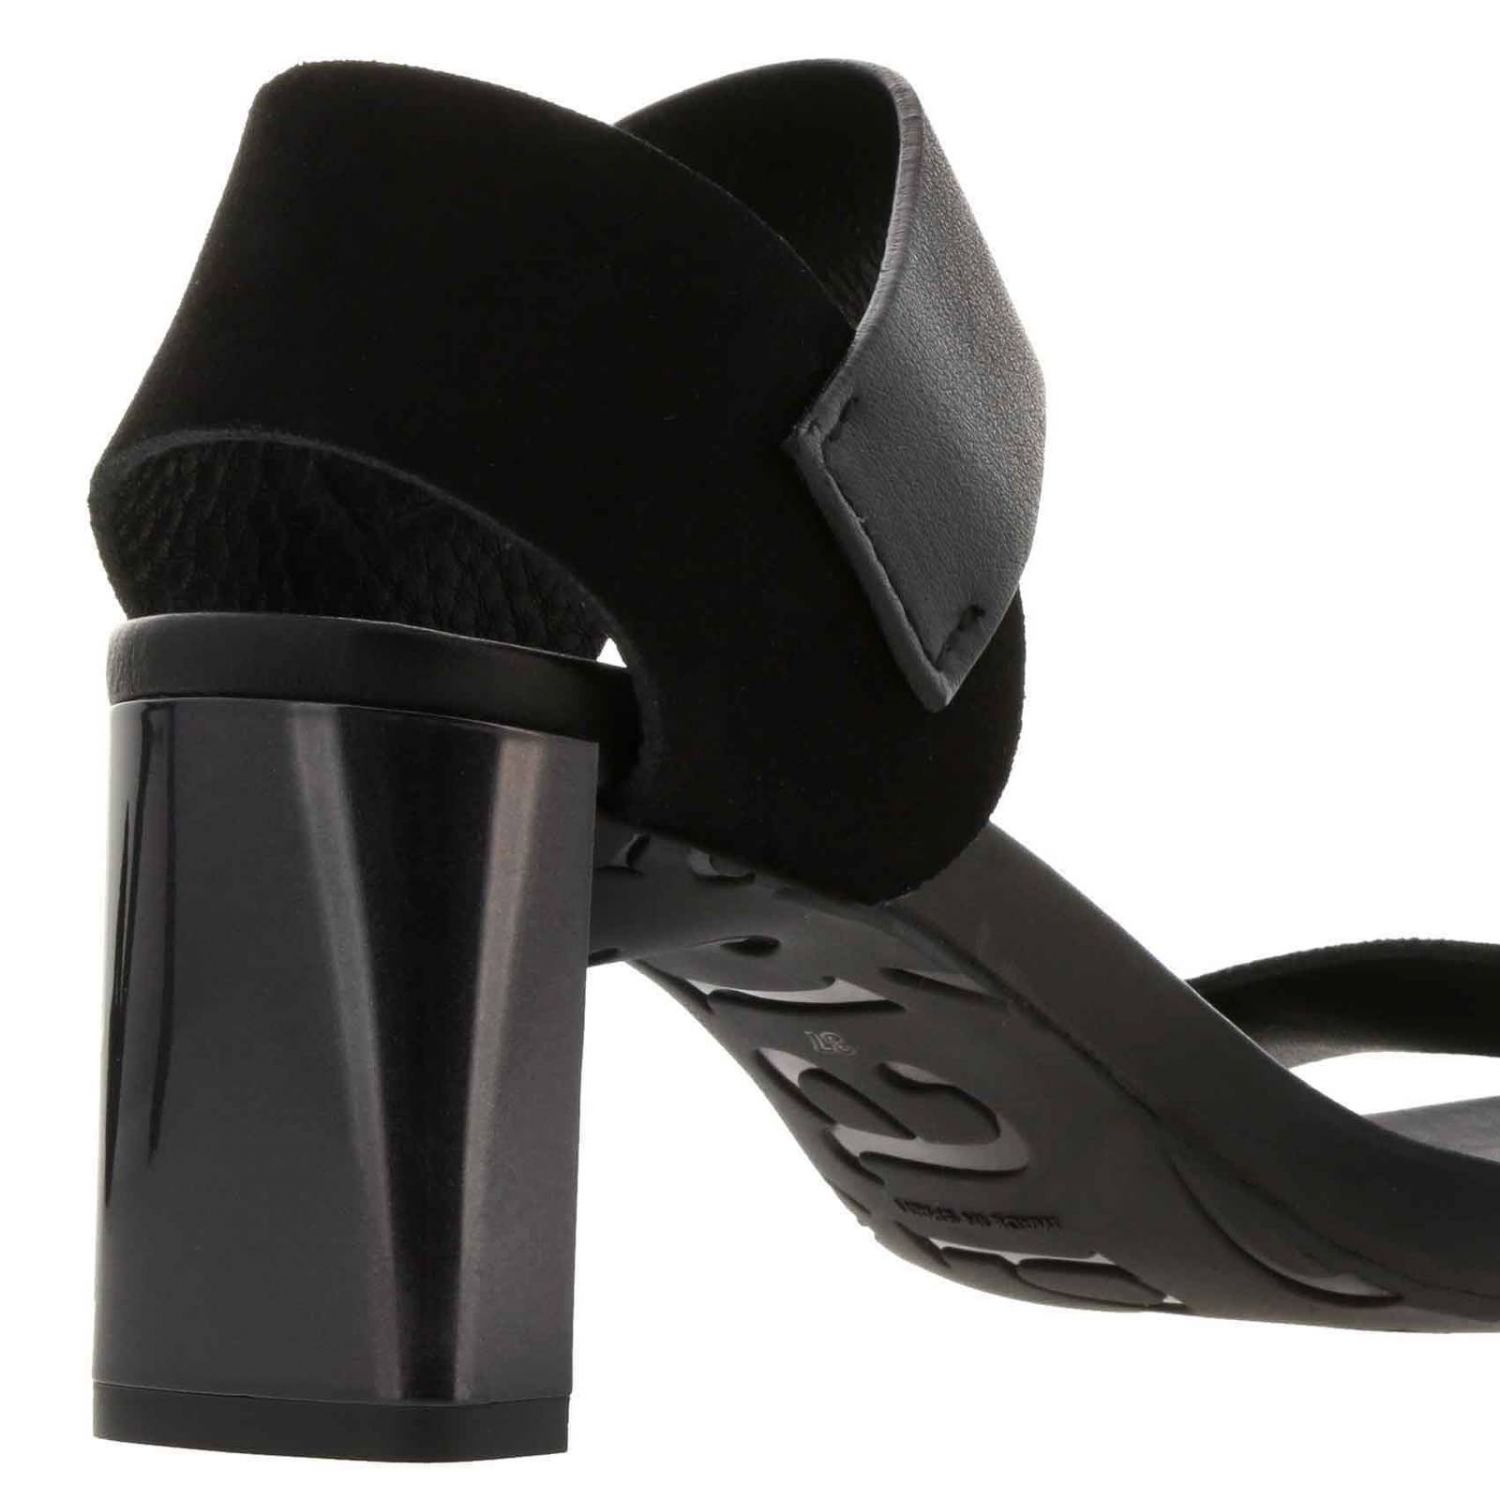 Pedro Garcia Sandale in Schwarz Damen Schuhe Absätze Sandalen mit Keilabsatz 